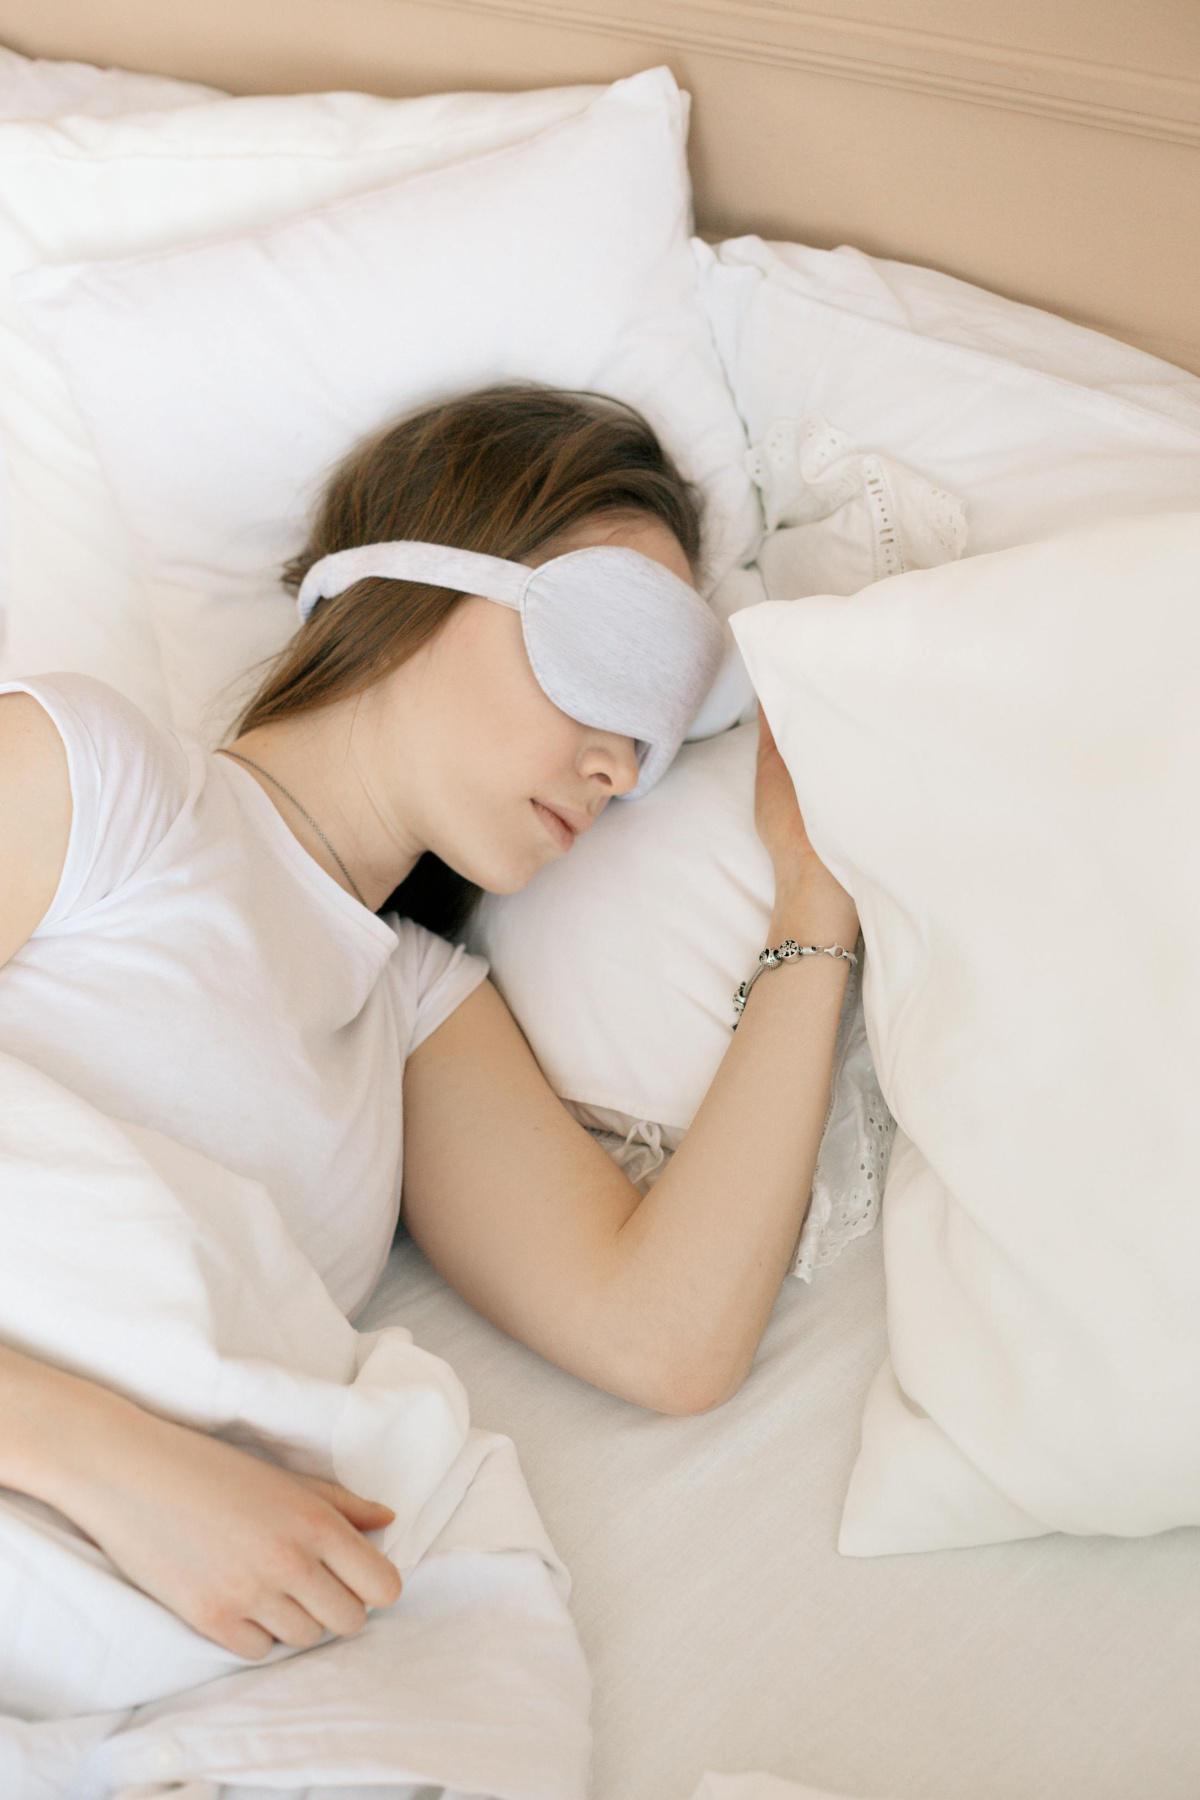 النوم مع التكنولوجيا: خطر على دماغك